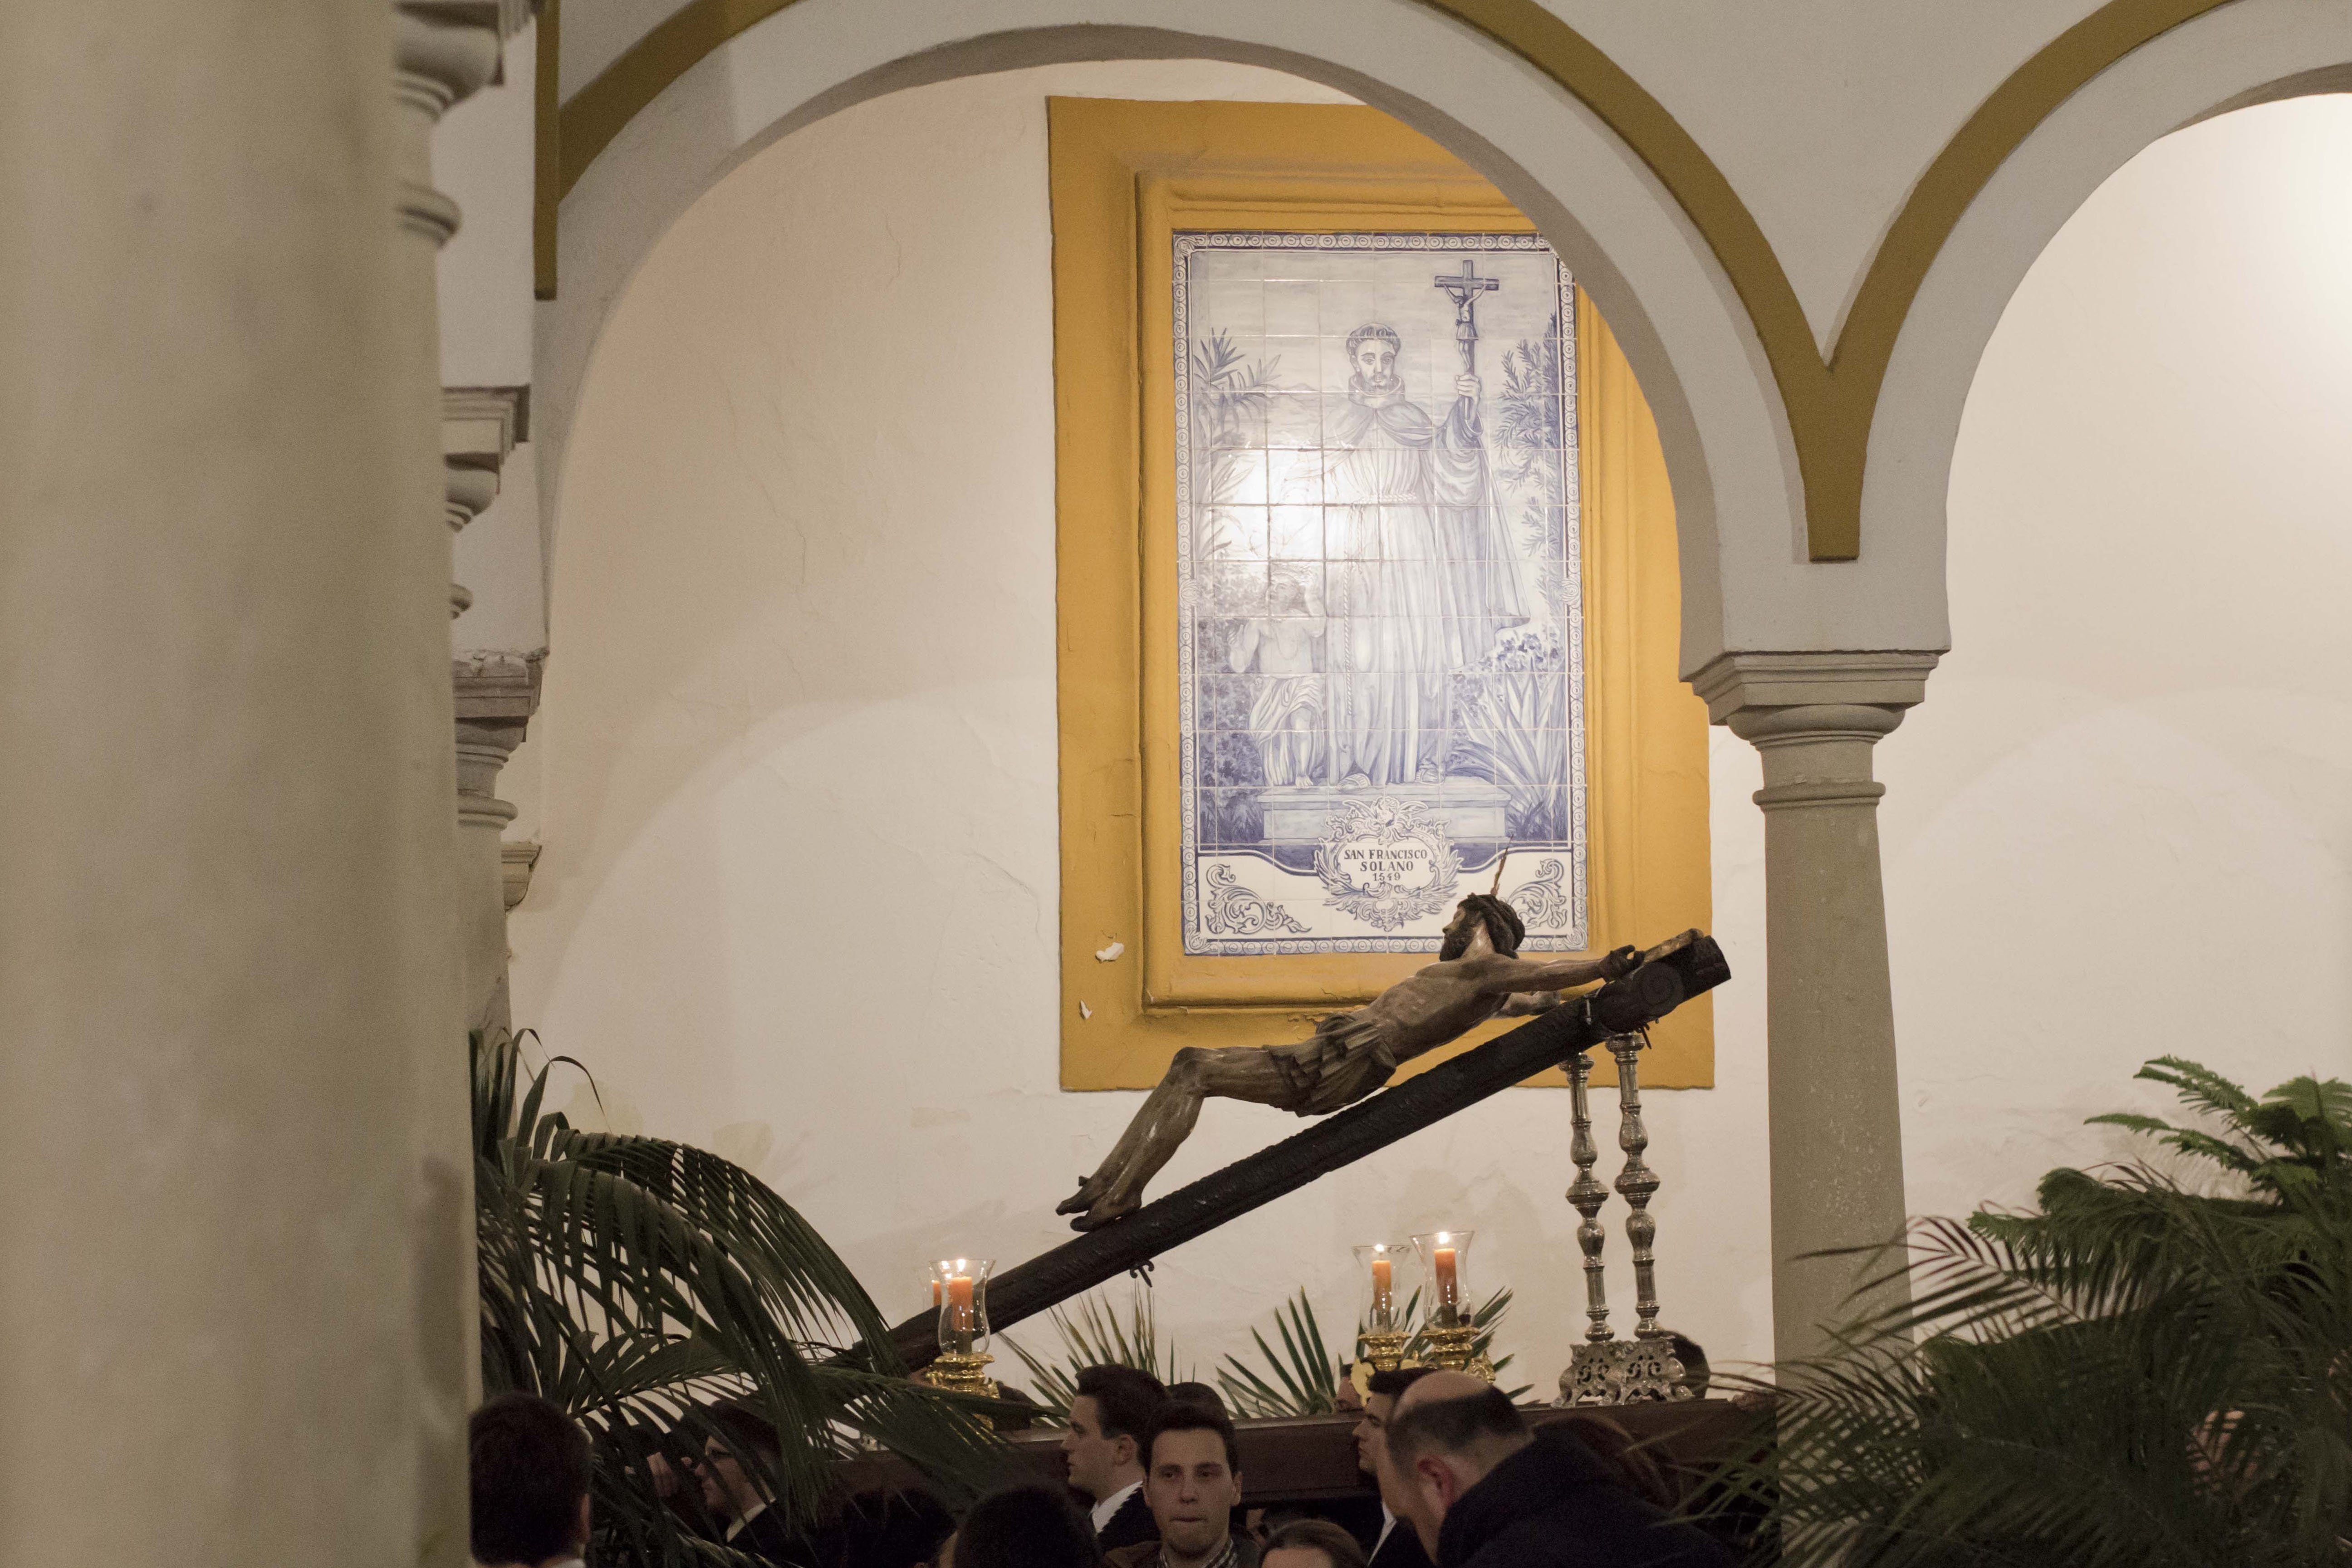 Galería: Un Vía Crucis de Pasión en el claustro del convento franciscano. Imágenes de Jesús Ruiz "Gitanito"